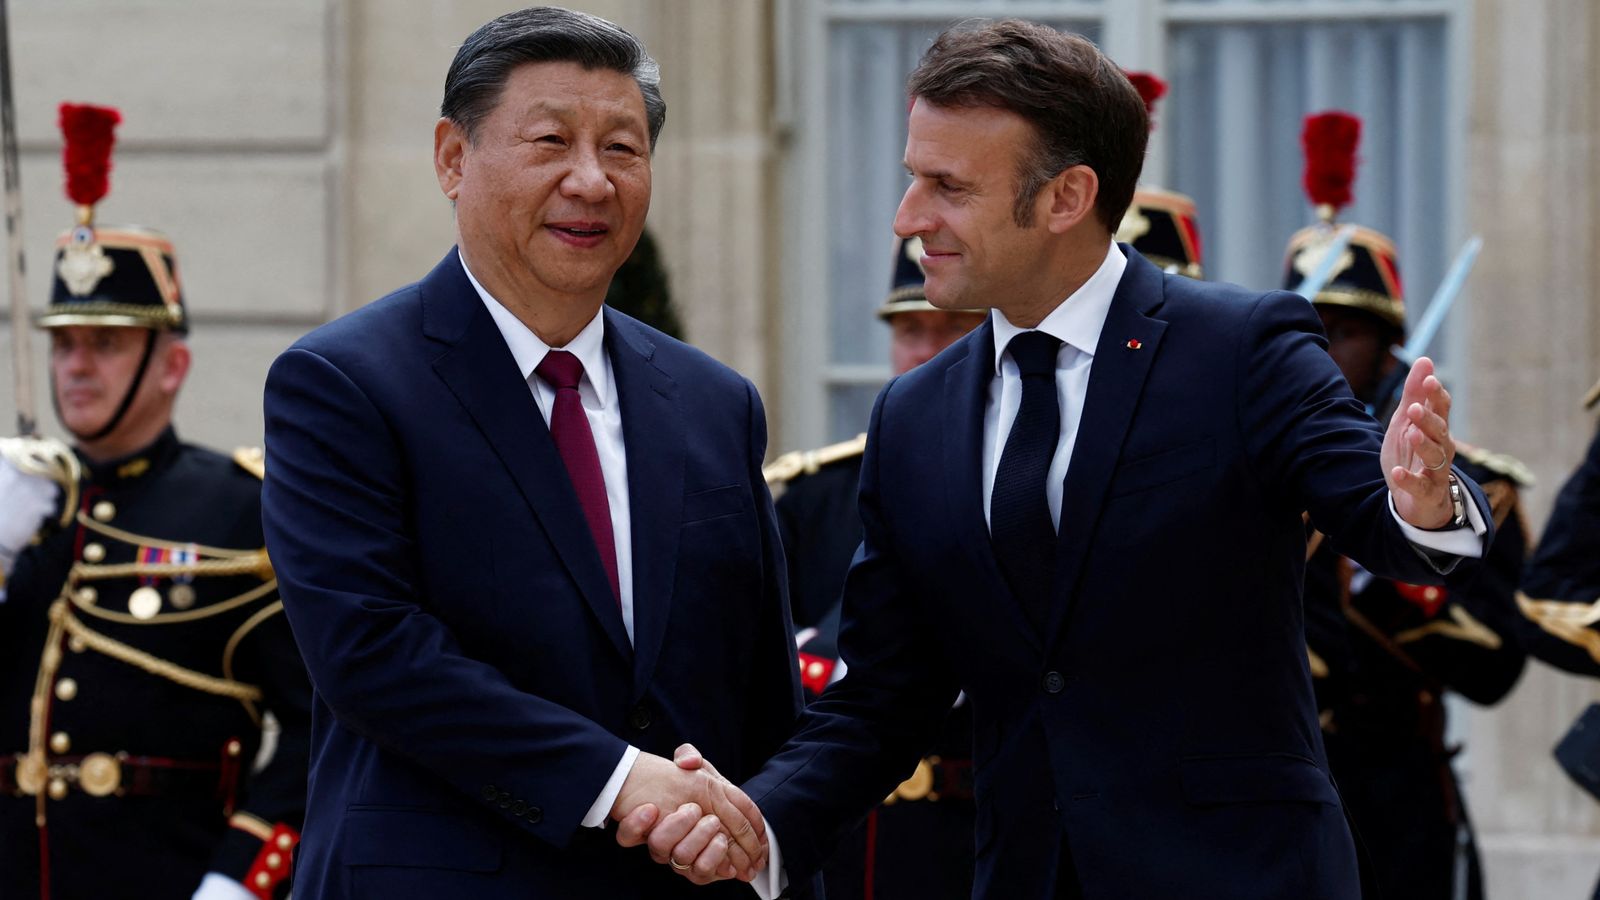 Tough talks ahead as China's Xi Jinping touches down in Paris for European trip